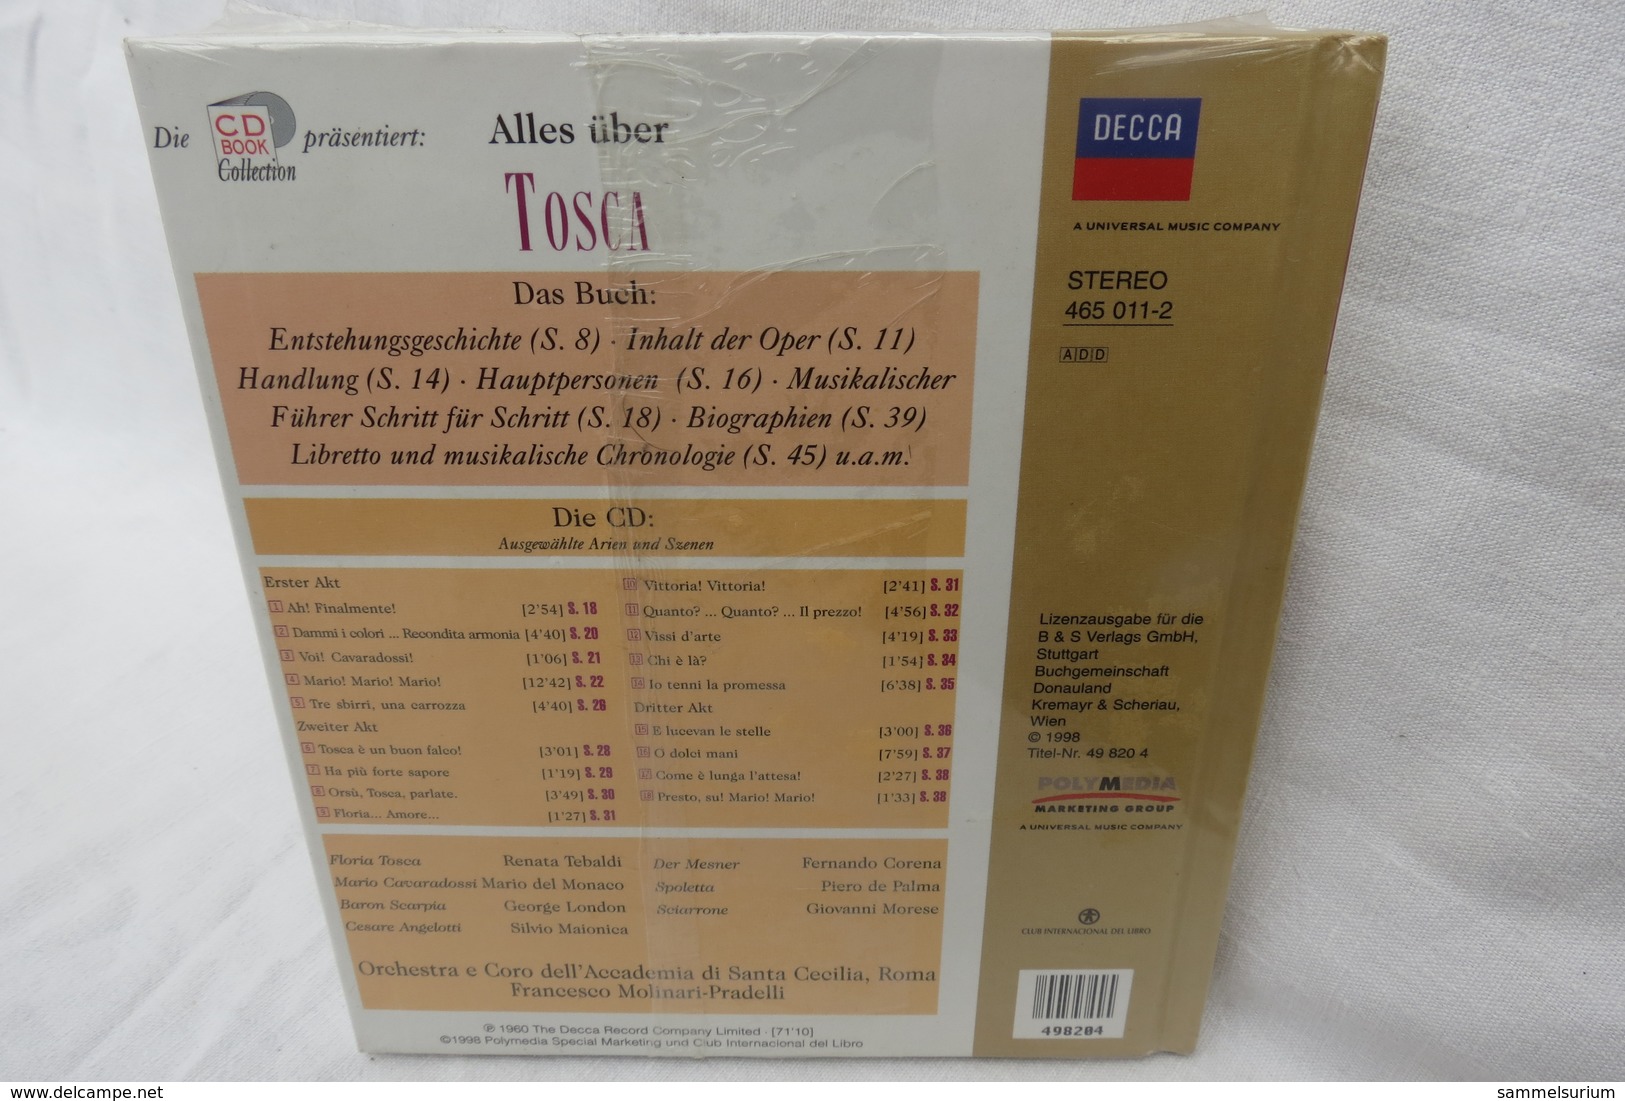 CD "TOSCA Von Giacomo Puccini" Mit Buch Aus Der CD Book Collection (ungeöffnet, Original Eingeschweißt) - Oper & Operette